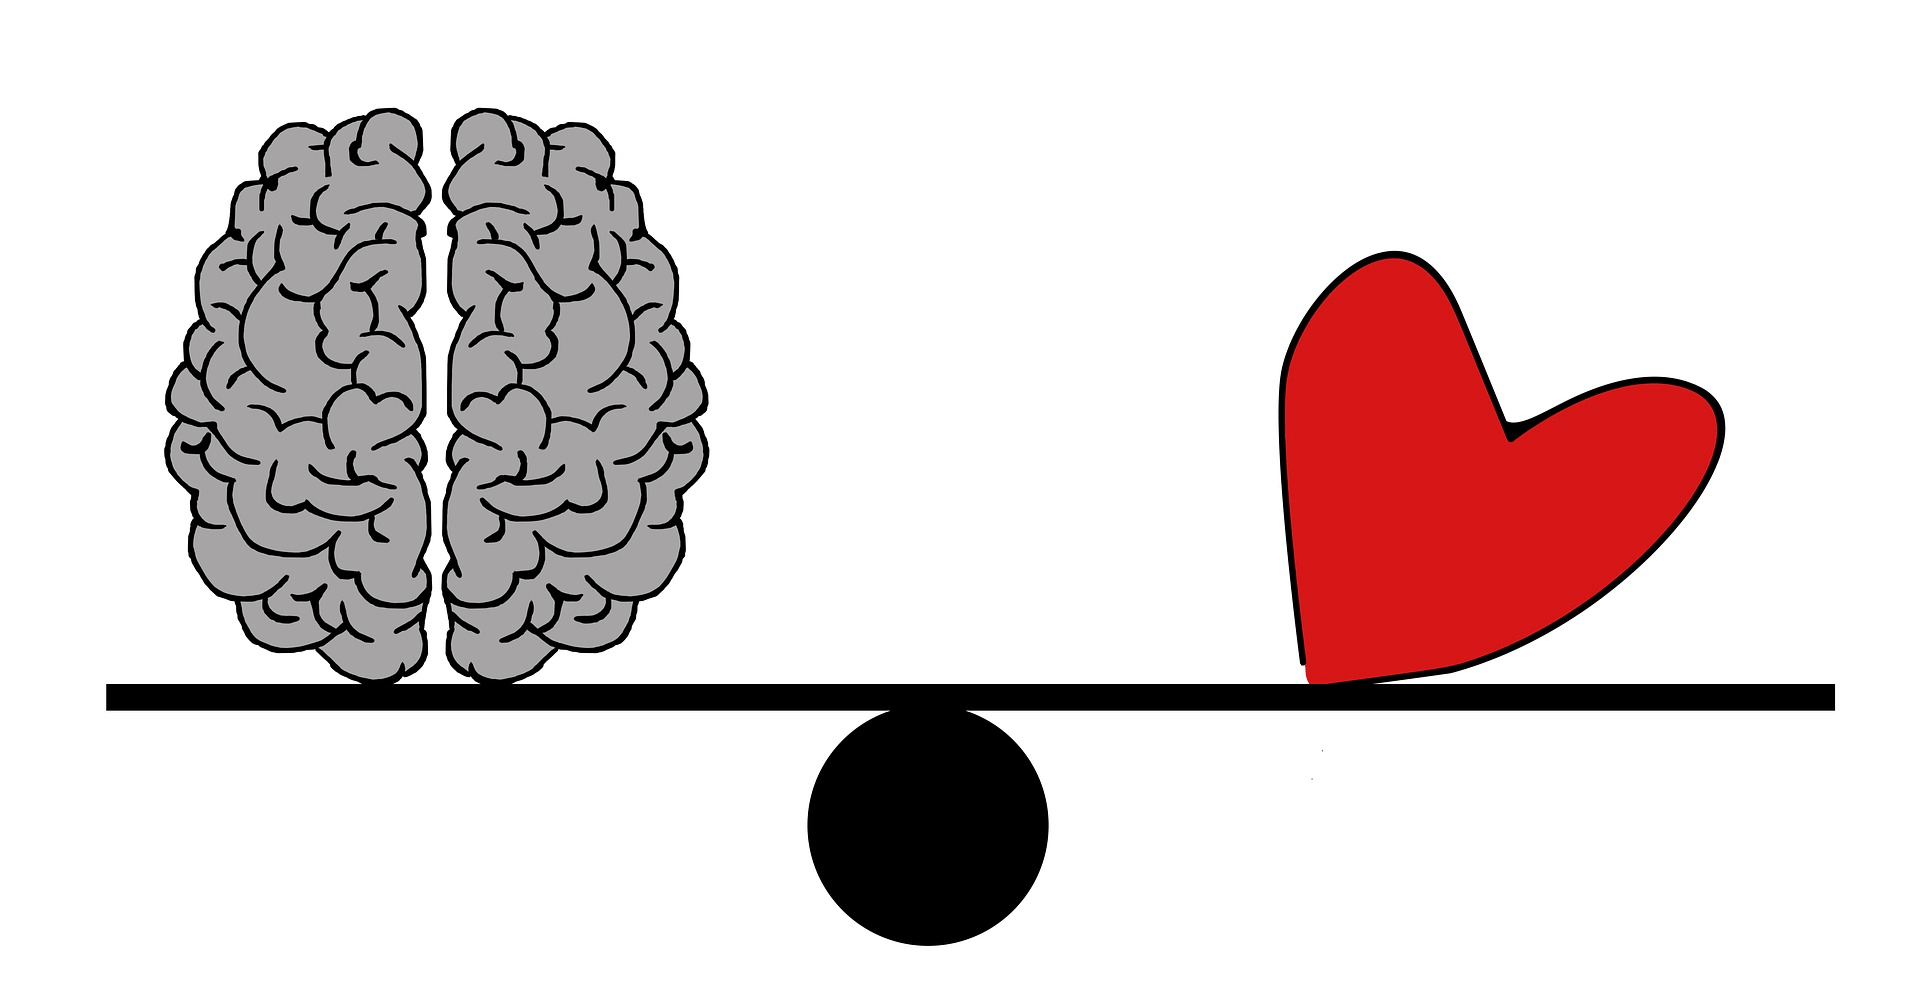 Equilibrio entre el cerebro y el corazón